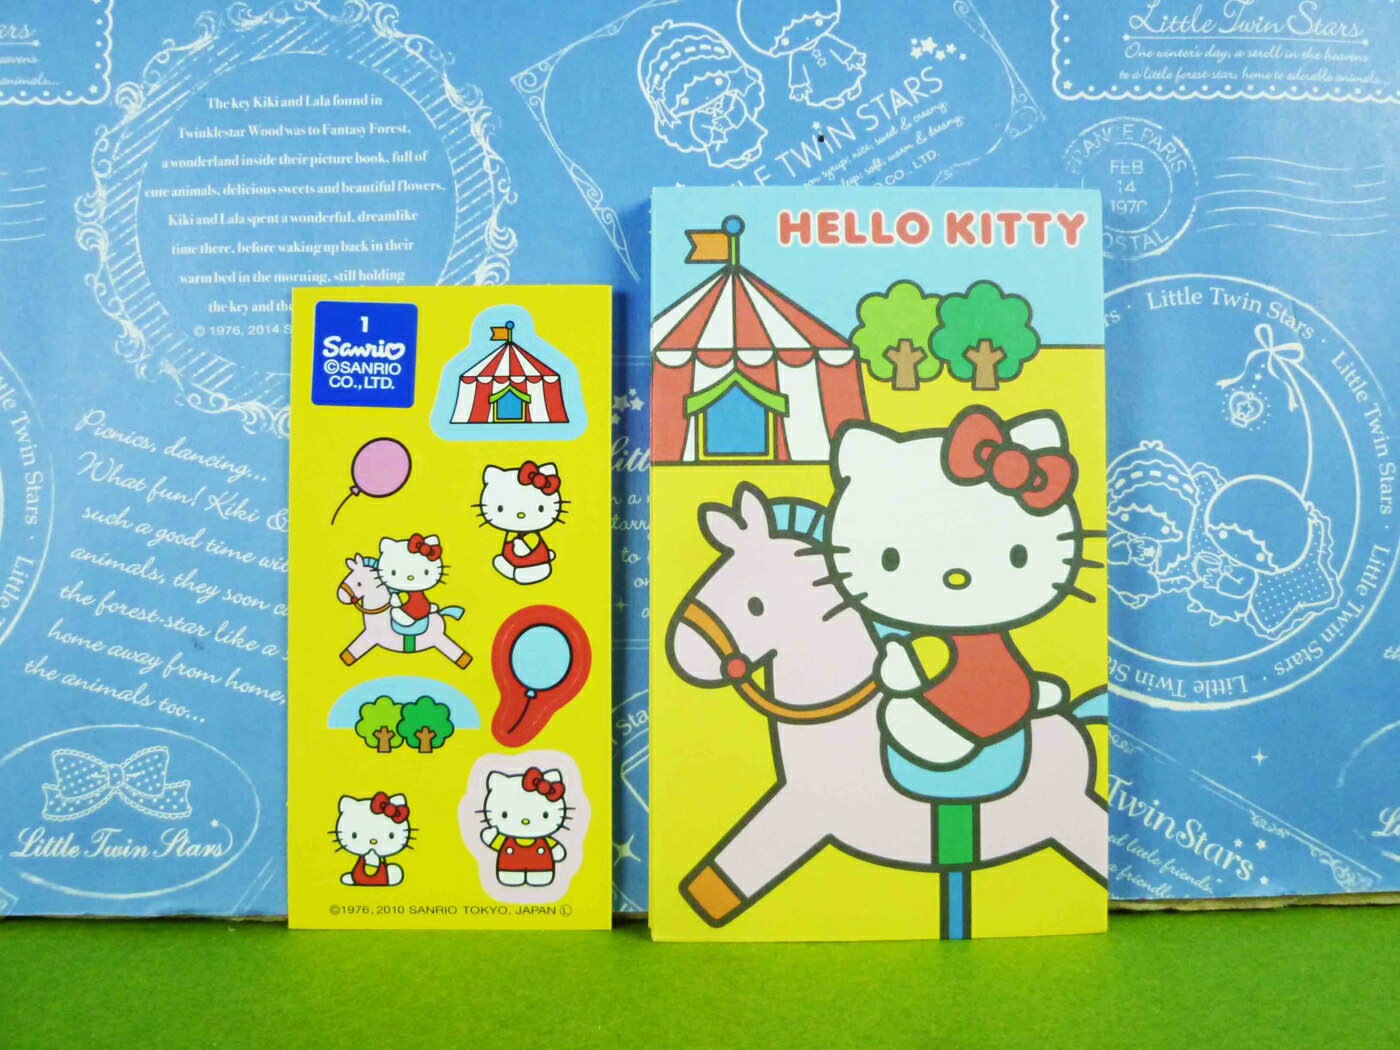 【震撼精品百貨】Hello Kitty 凱蒂貓 紅包袋組 騎馬【共1款】 震撼日式精品百貨